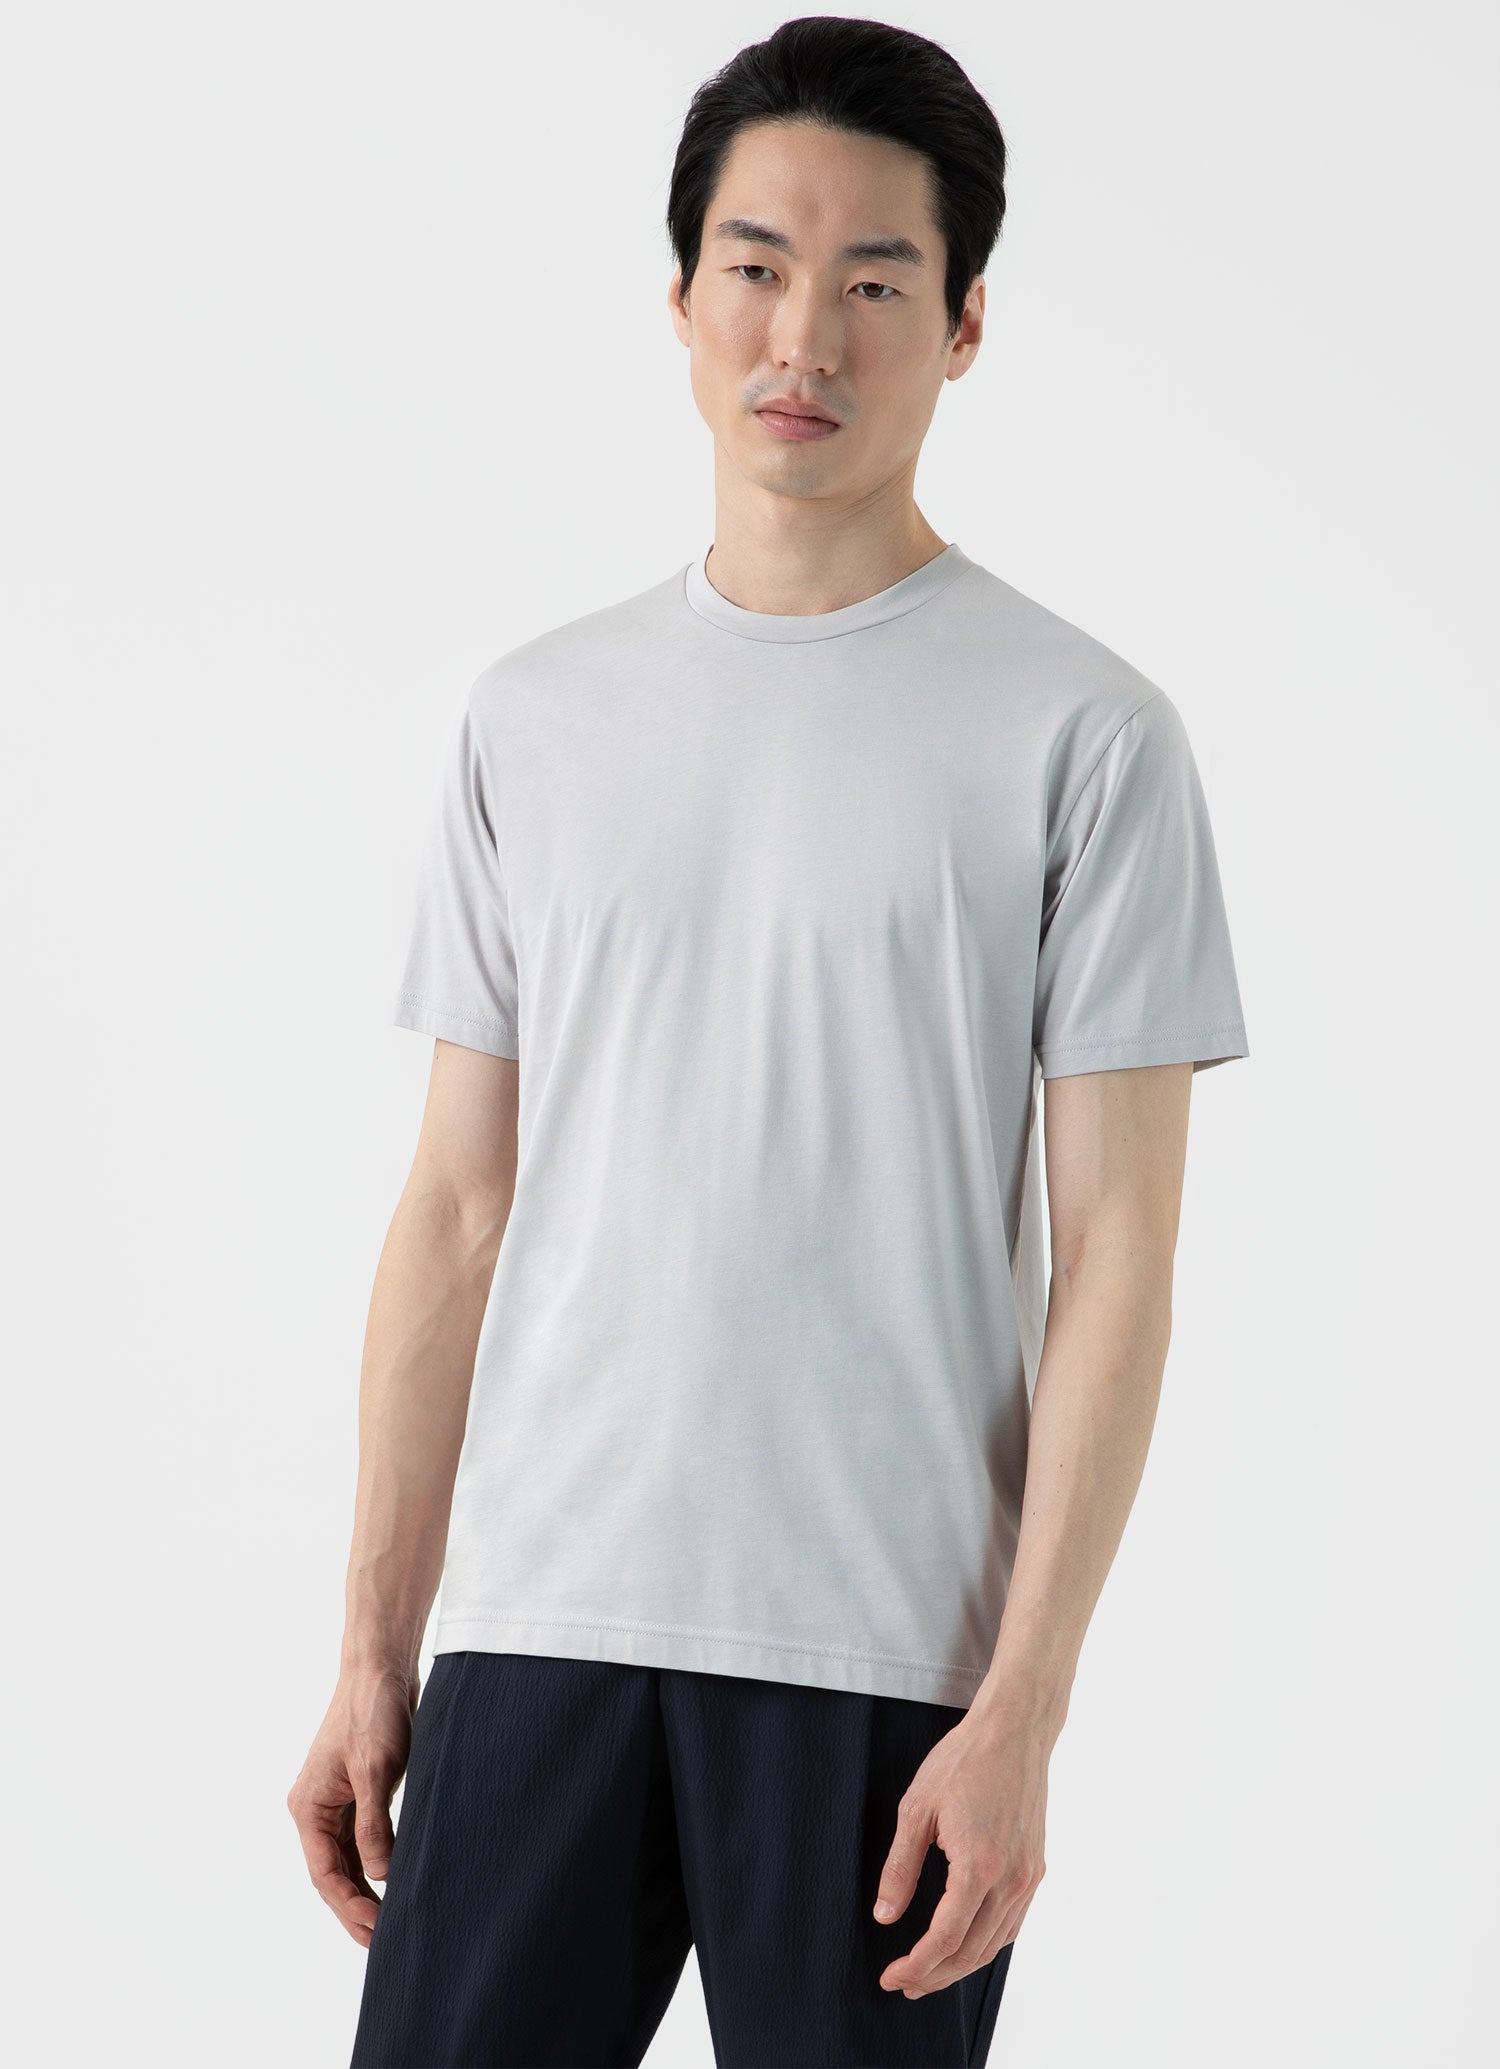 T-shirt Men\'s in Sunspel | Waffle Ecru Long Sleeve